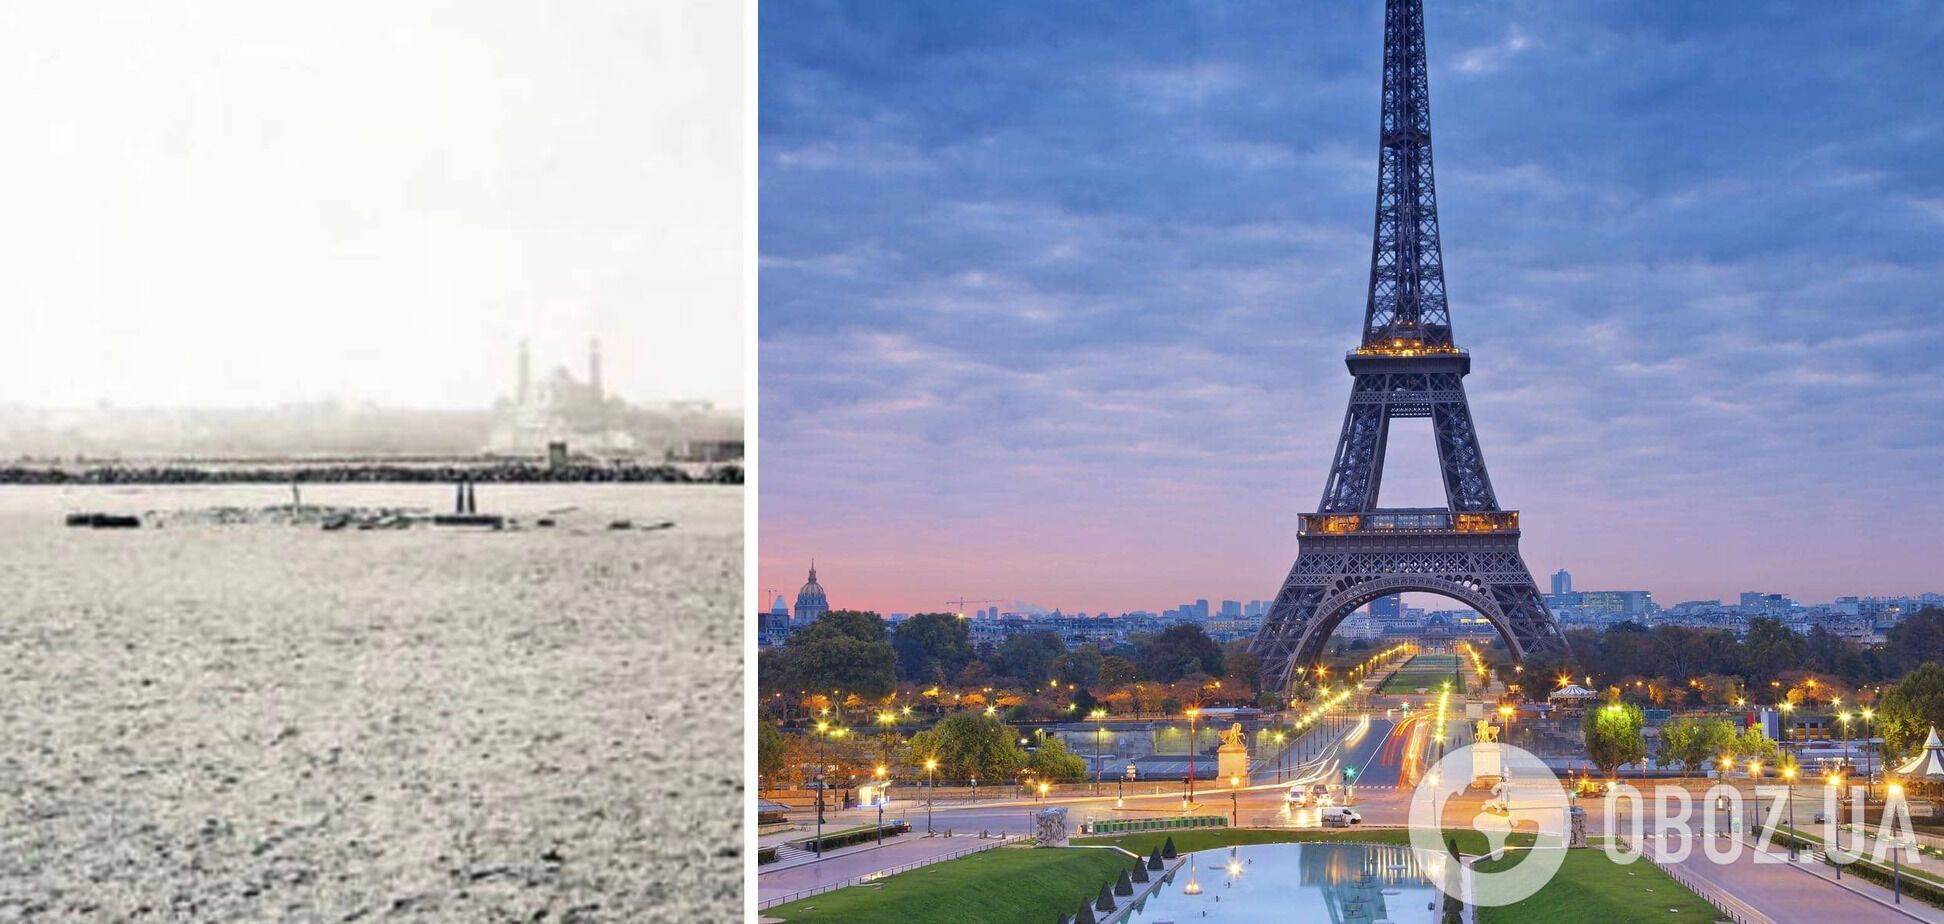 Марсово поле в Париже до и после строительства Эйфелевой башни.